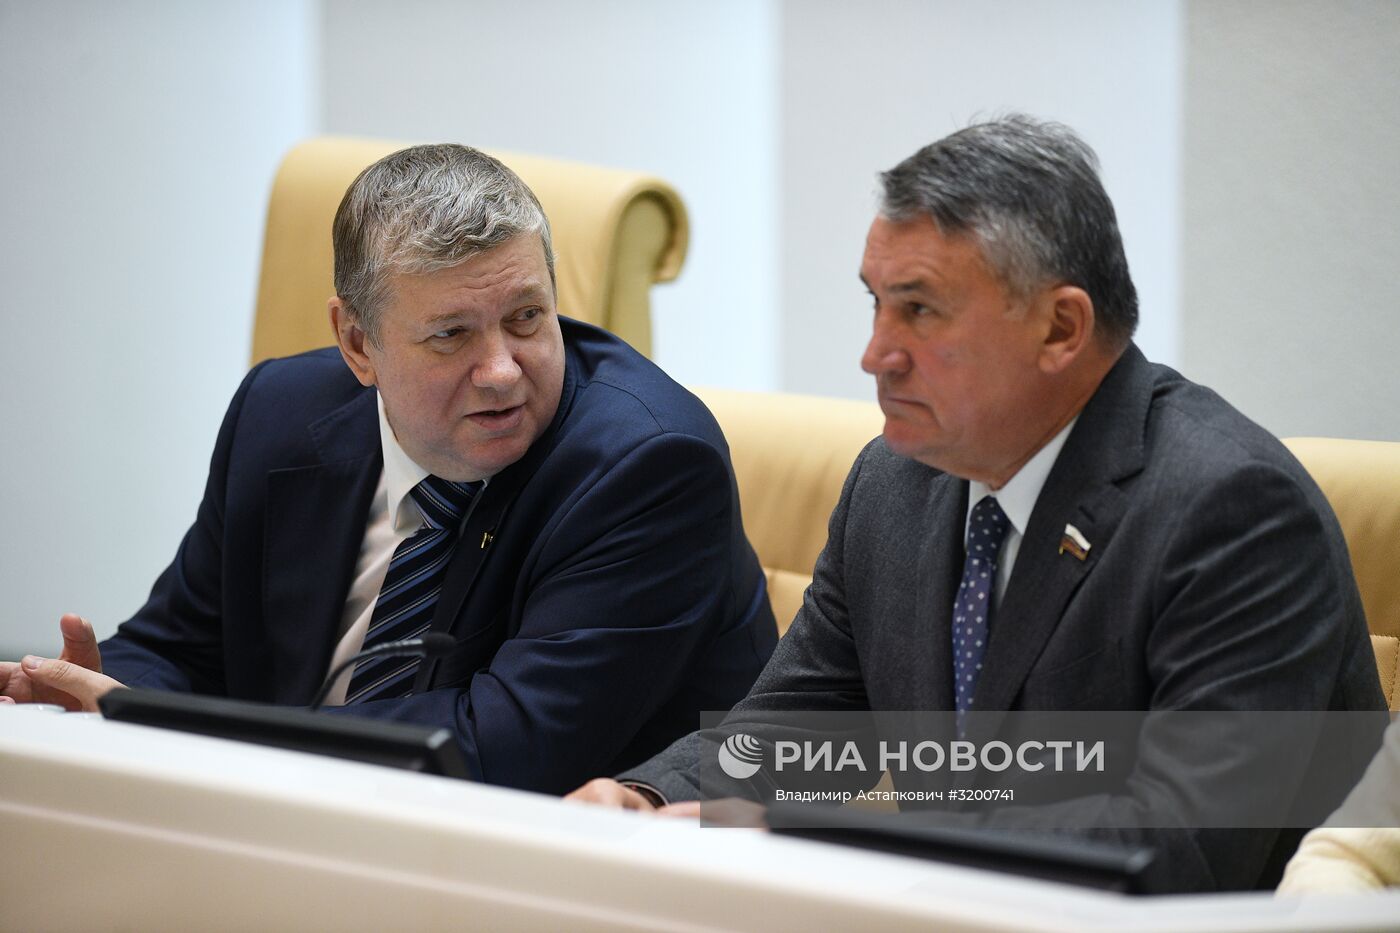 Первое заседание Совета Федерации РФ осенней сессии